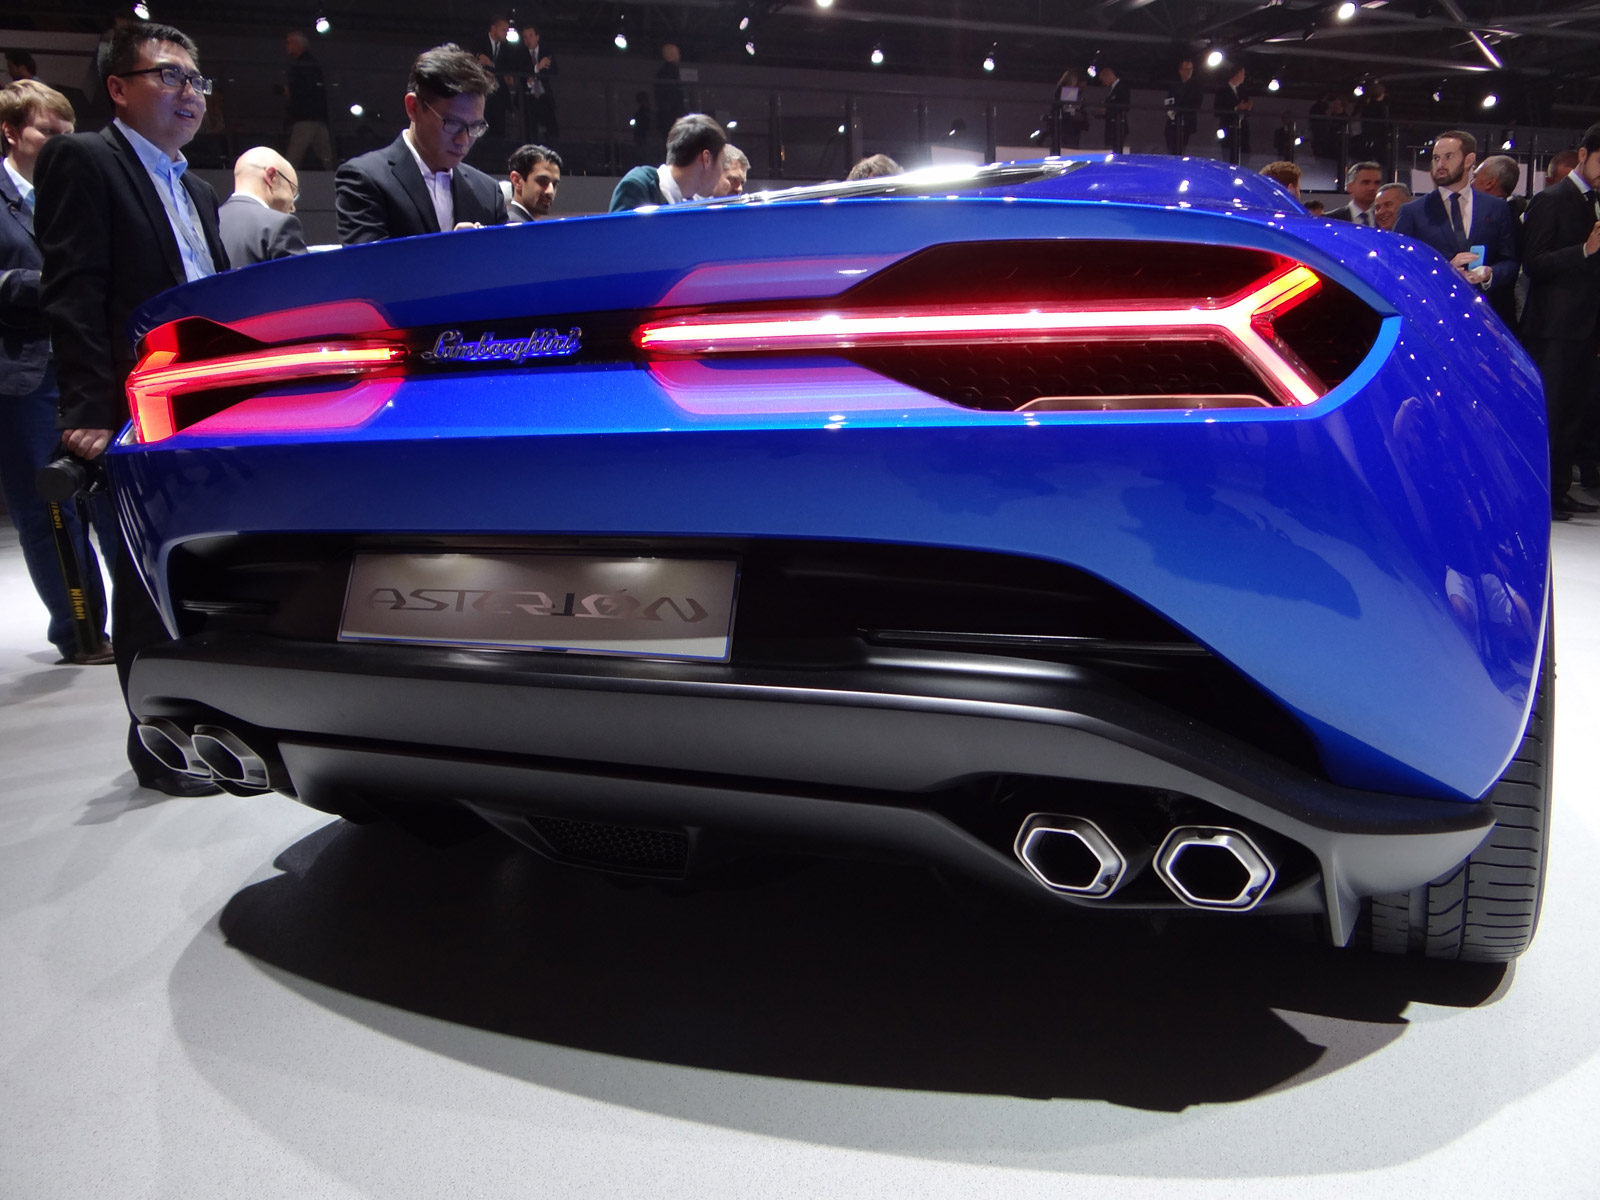 Siêu xe mới của Lamborghini sẽ có giá 1,2 triệu USD